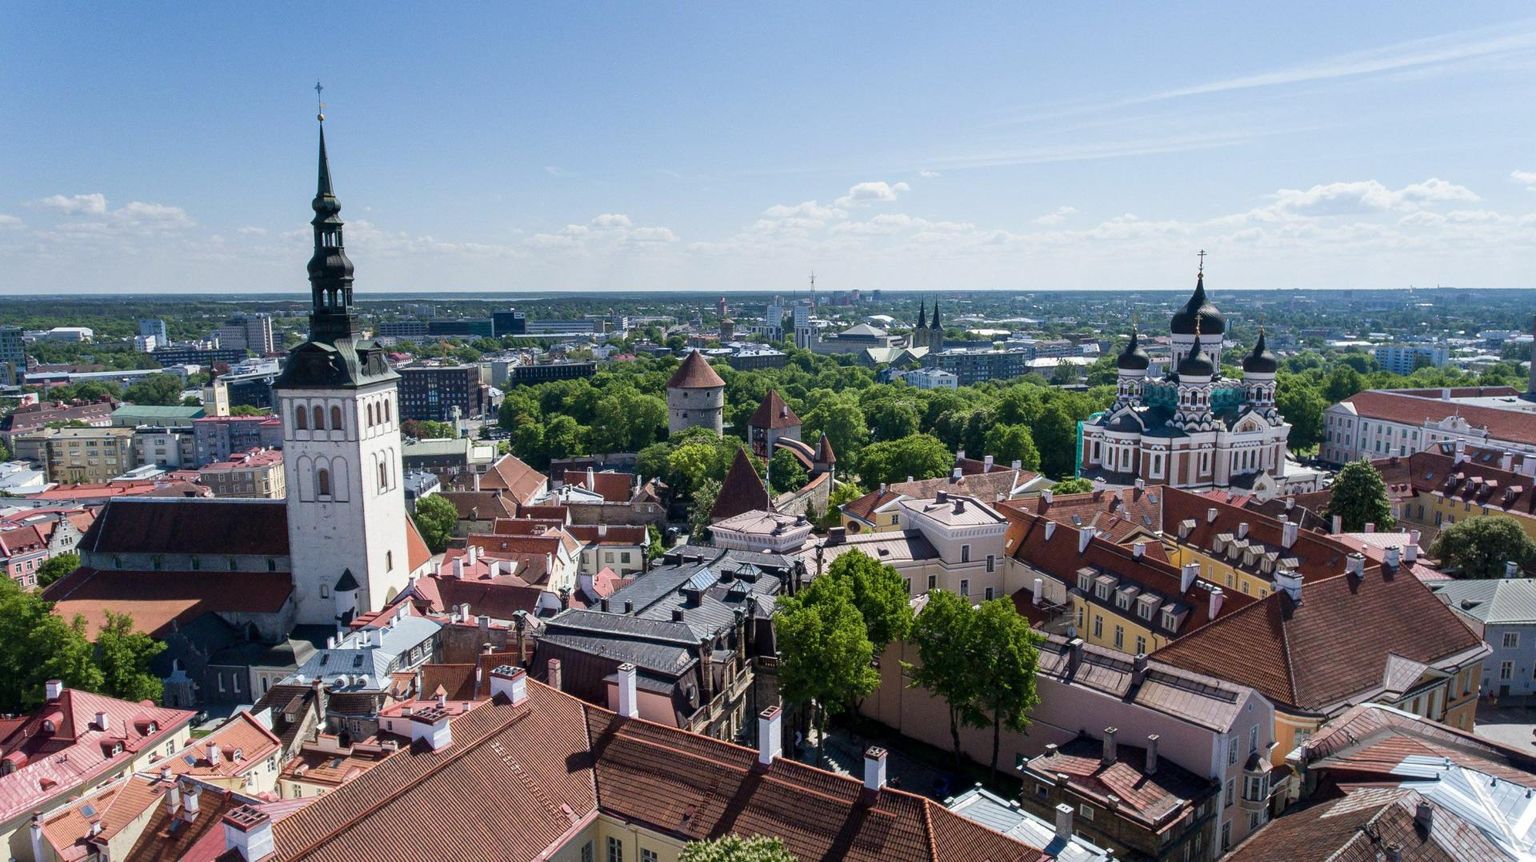 Tallinna vanalinn